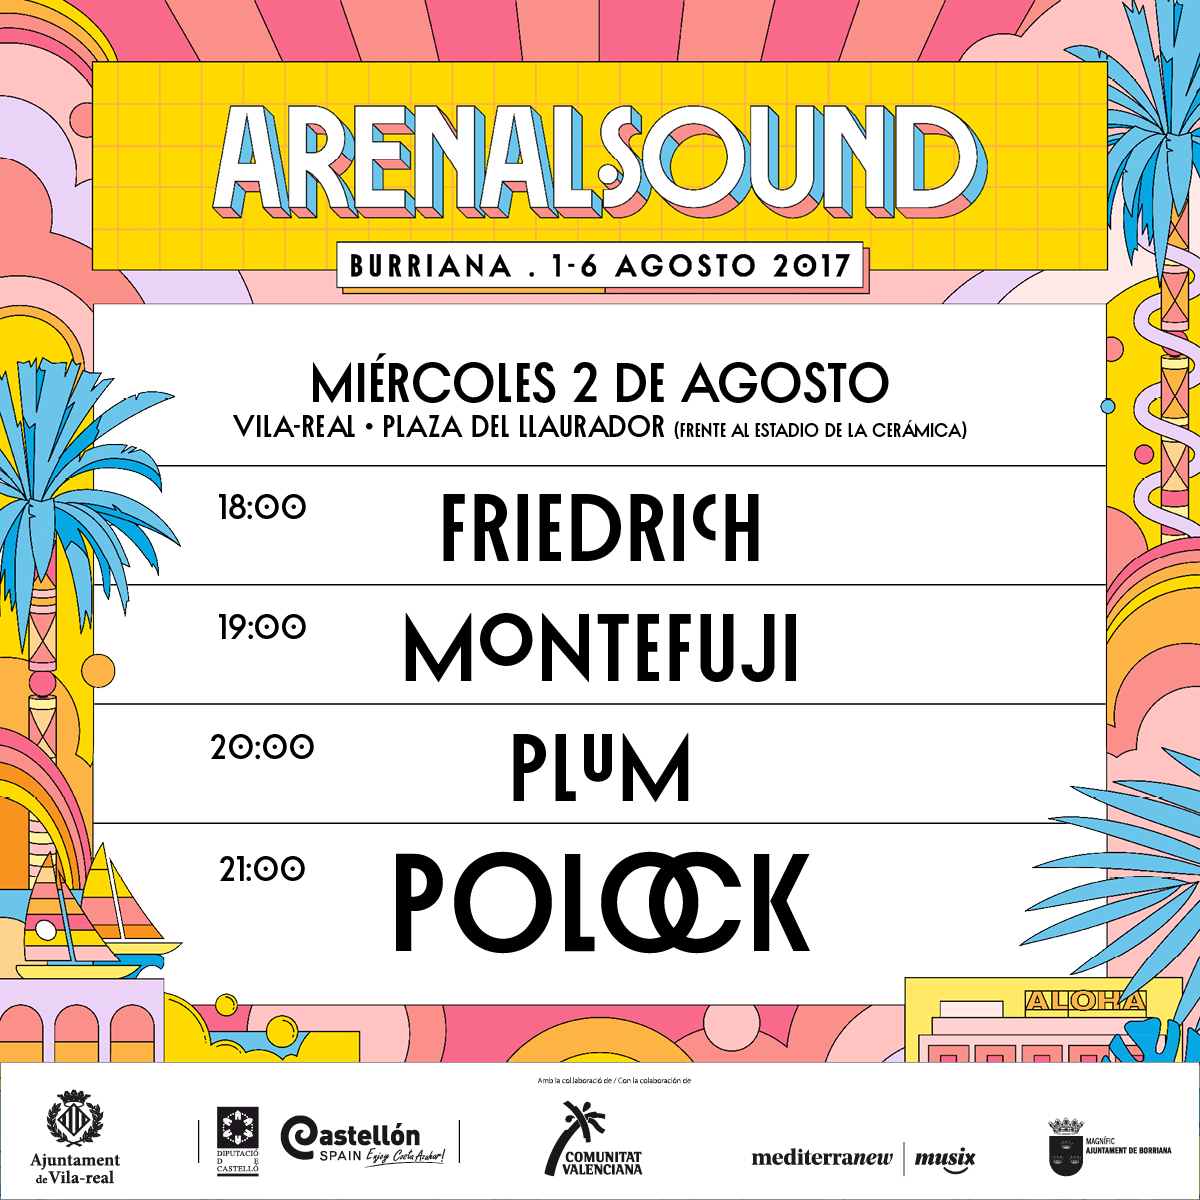 Hoy llega la segunda edición del Arenal Sound a Vila-real